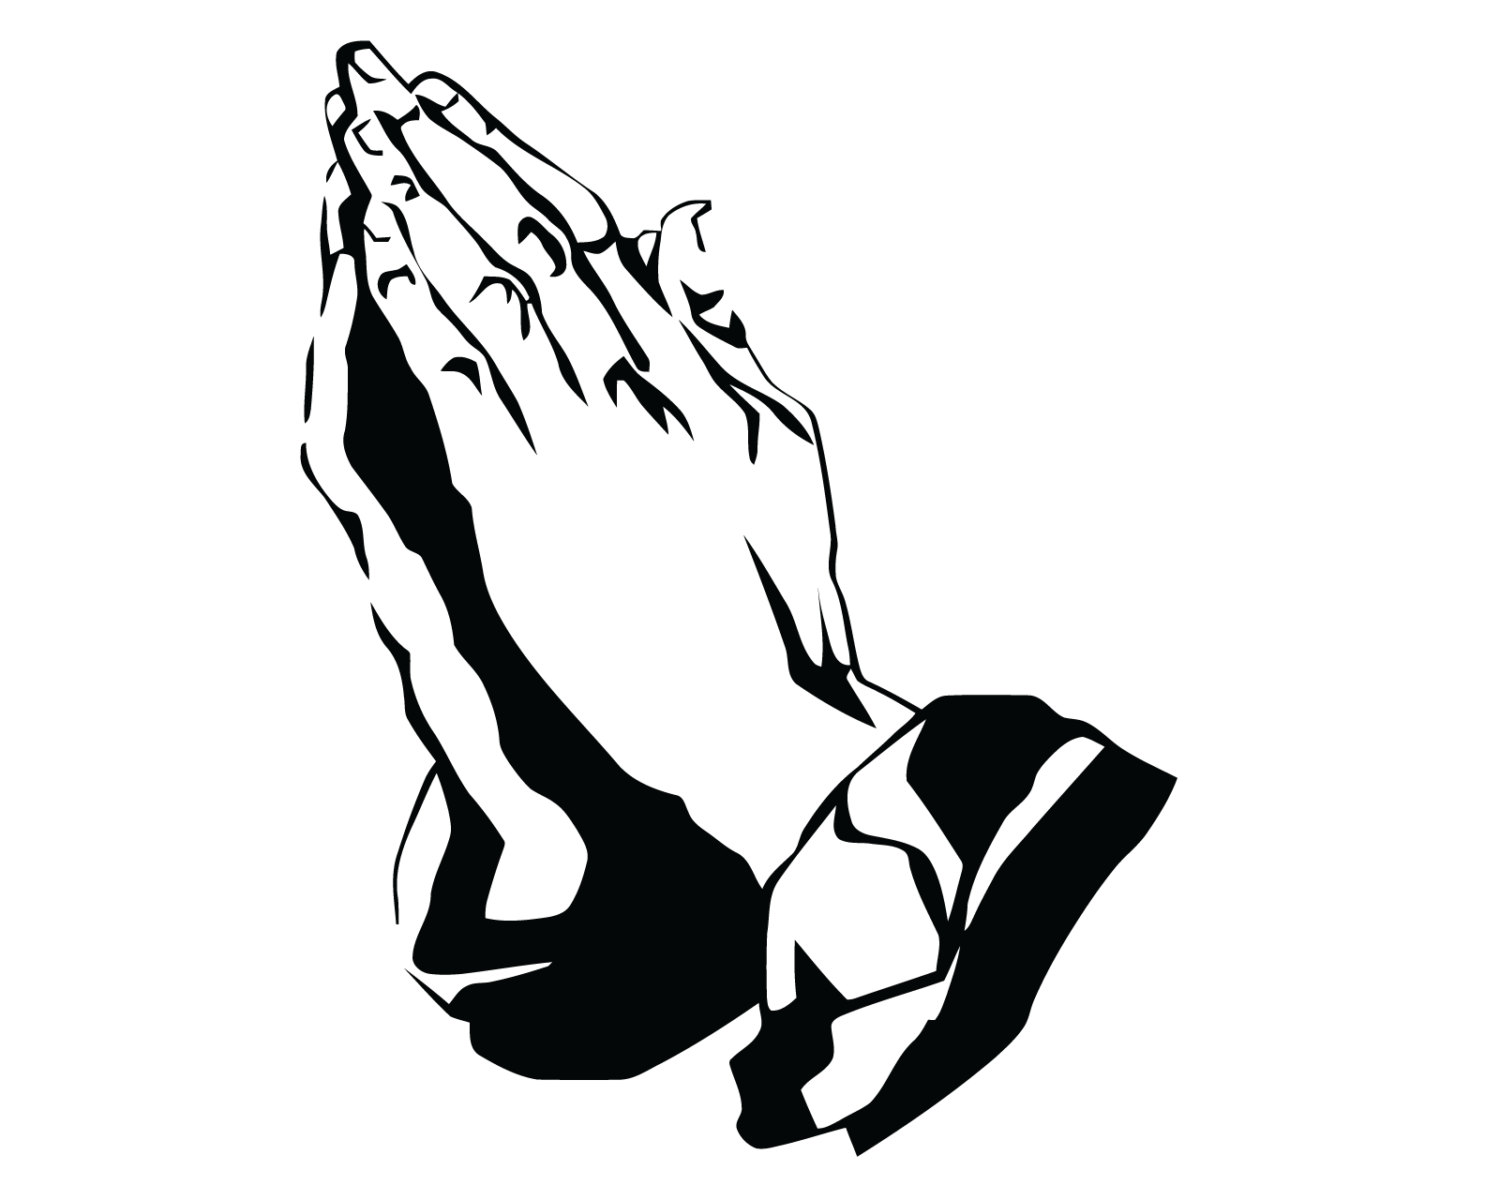 Praying hands | Etsy